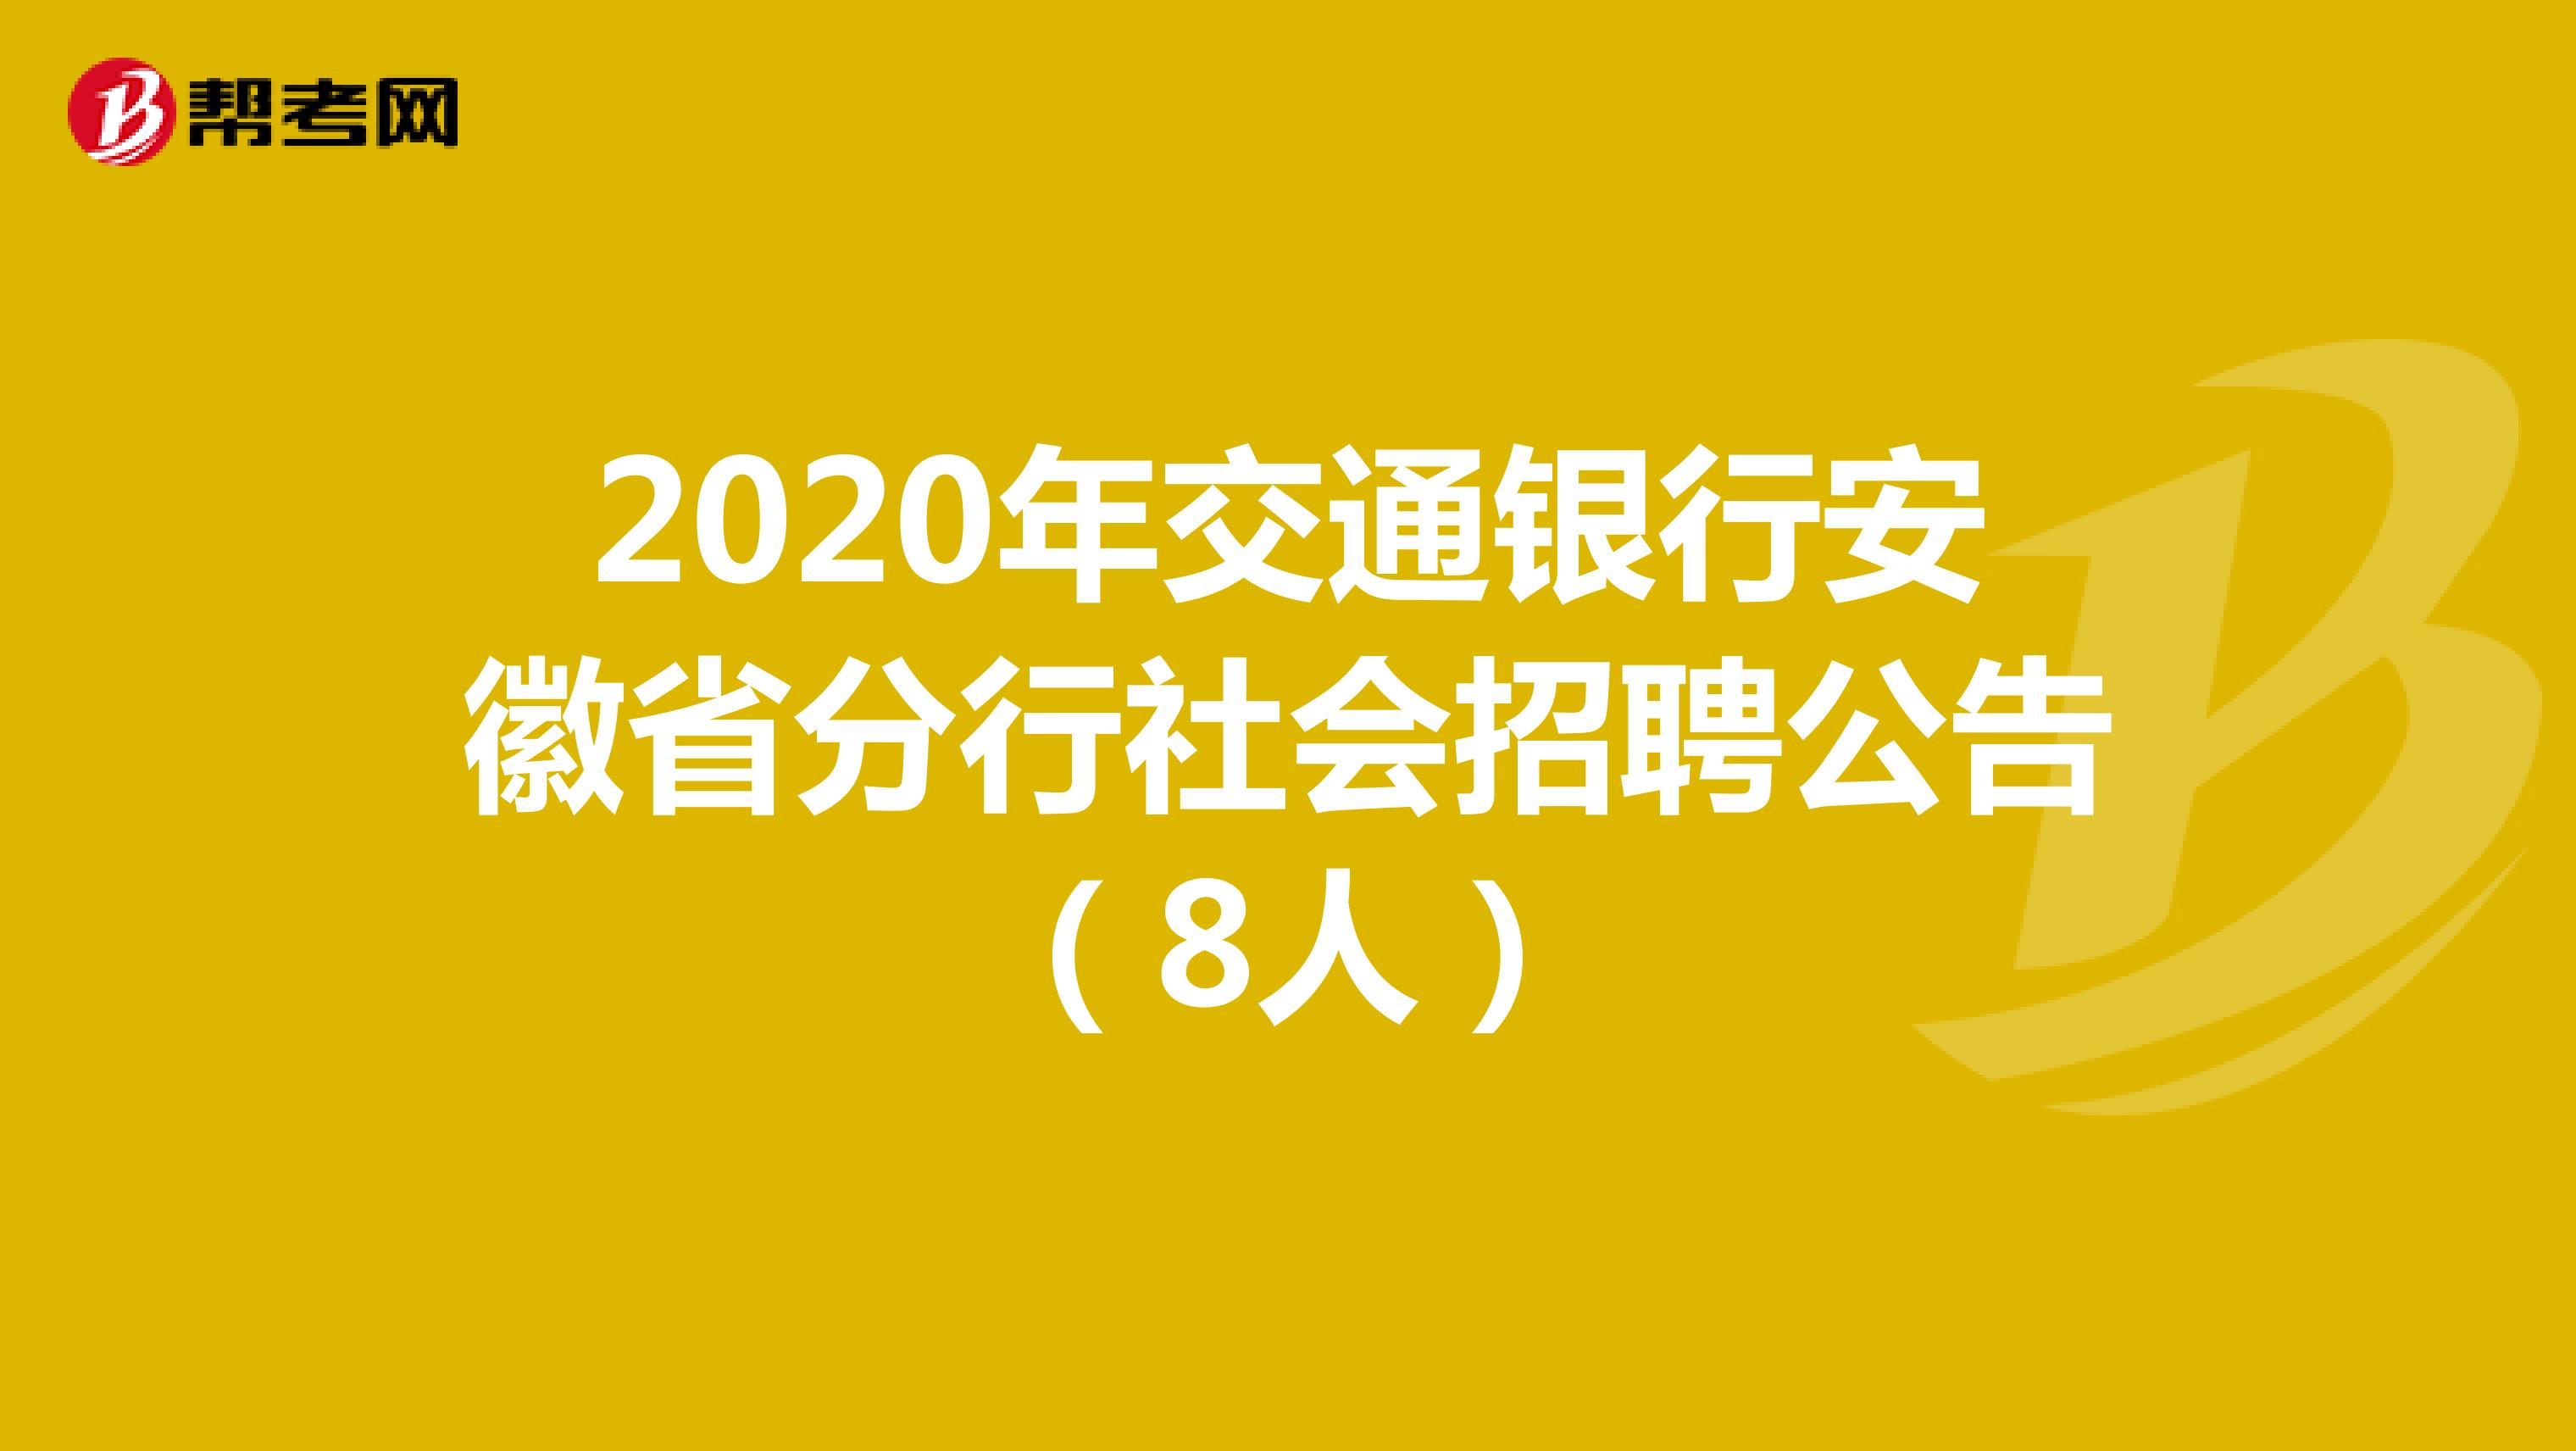 2020年交通银行安徽省分行社会招聘公告（8人）